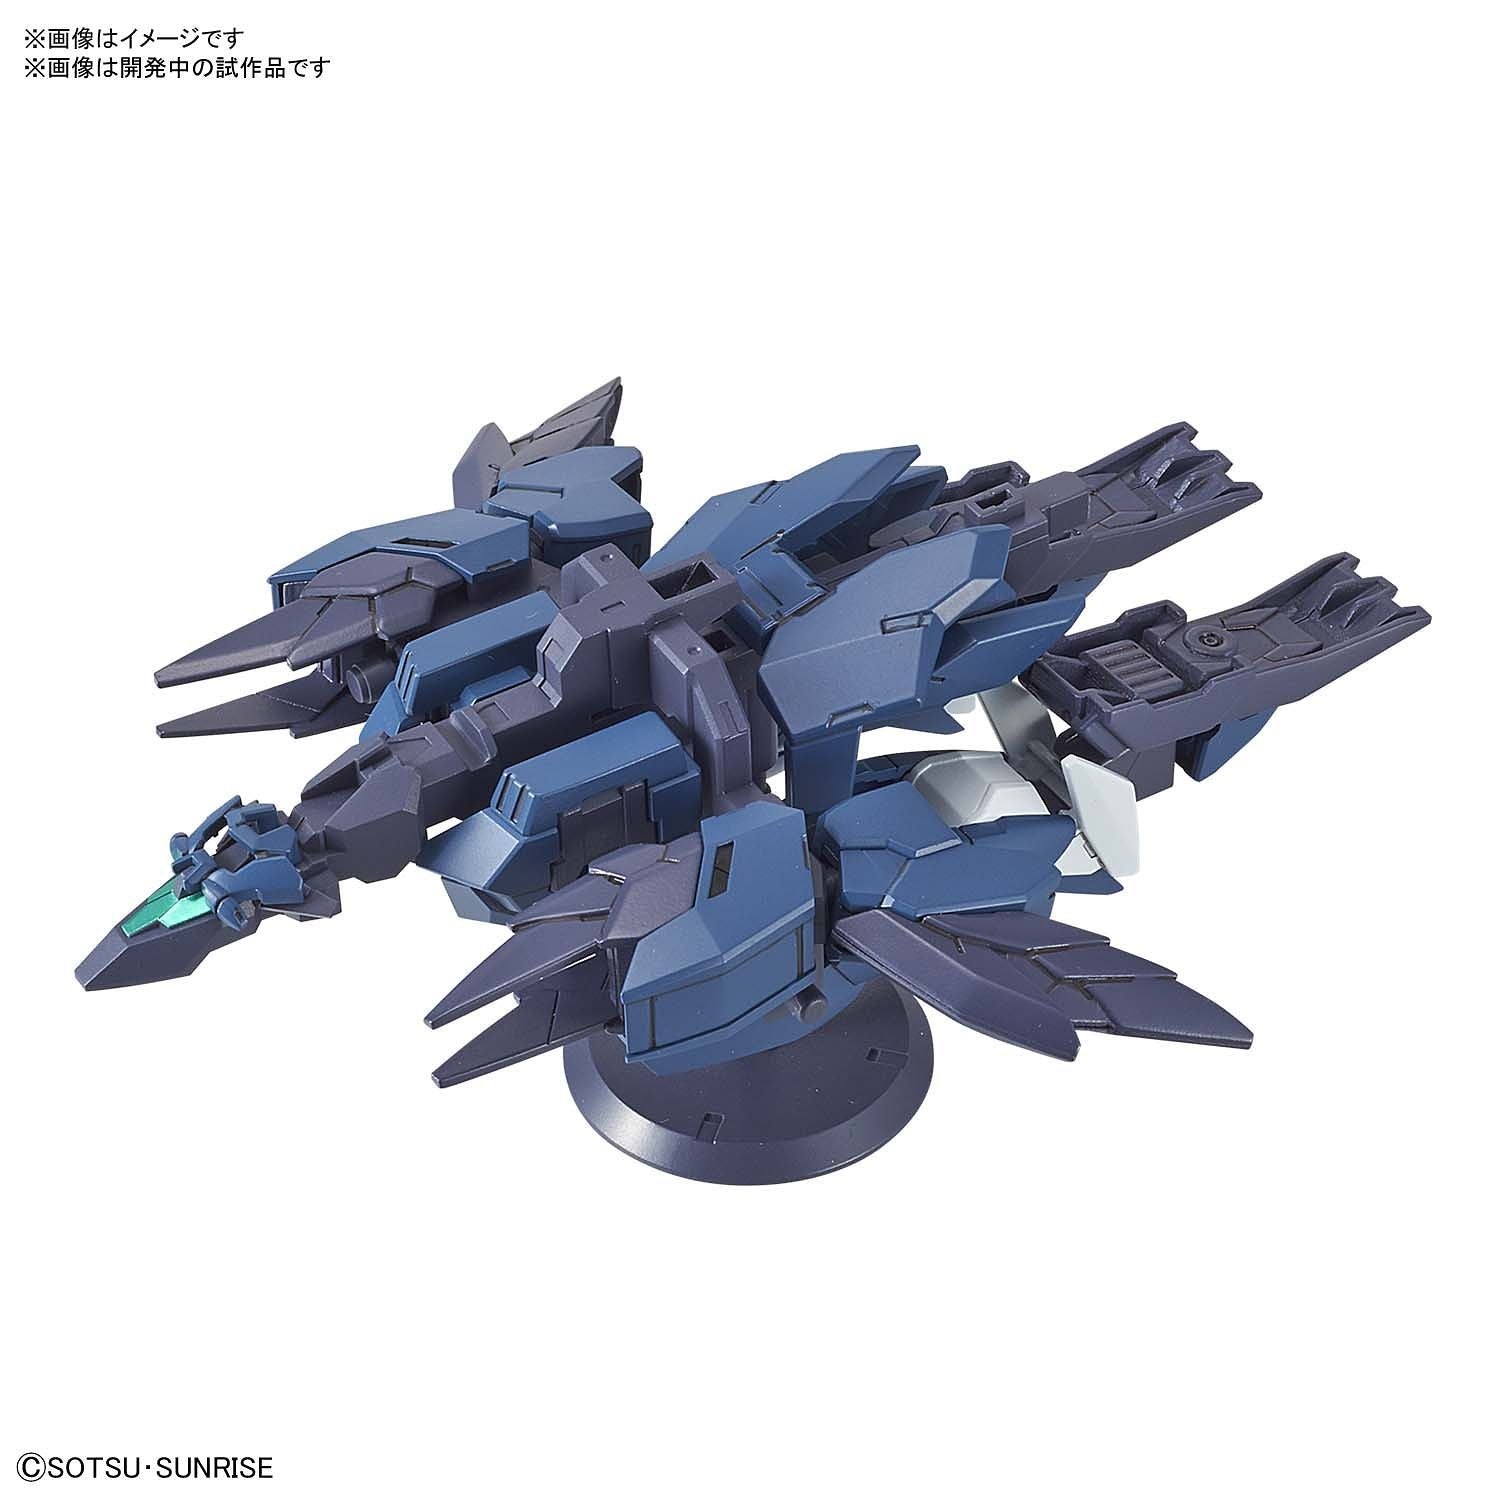 HG Gundam Mercuone Unit 1/144 - gundam-store.dk